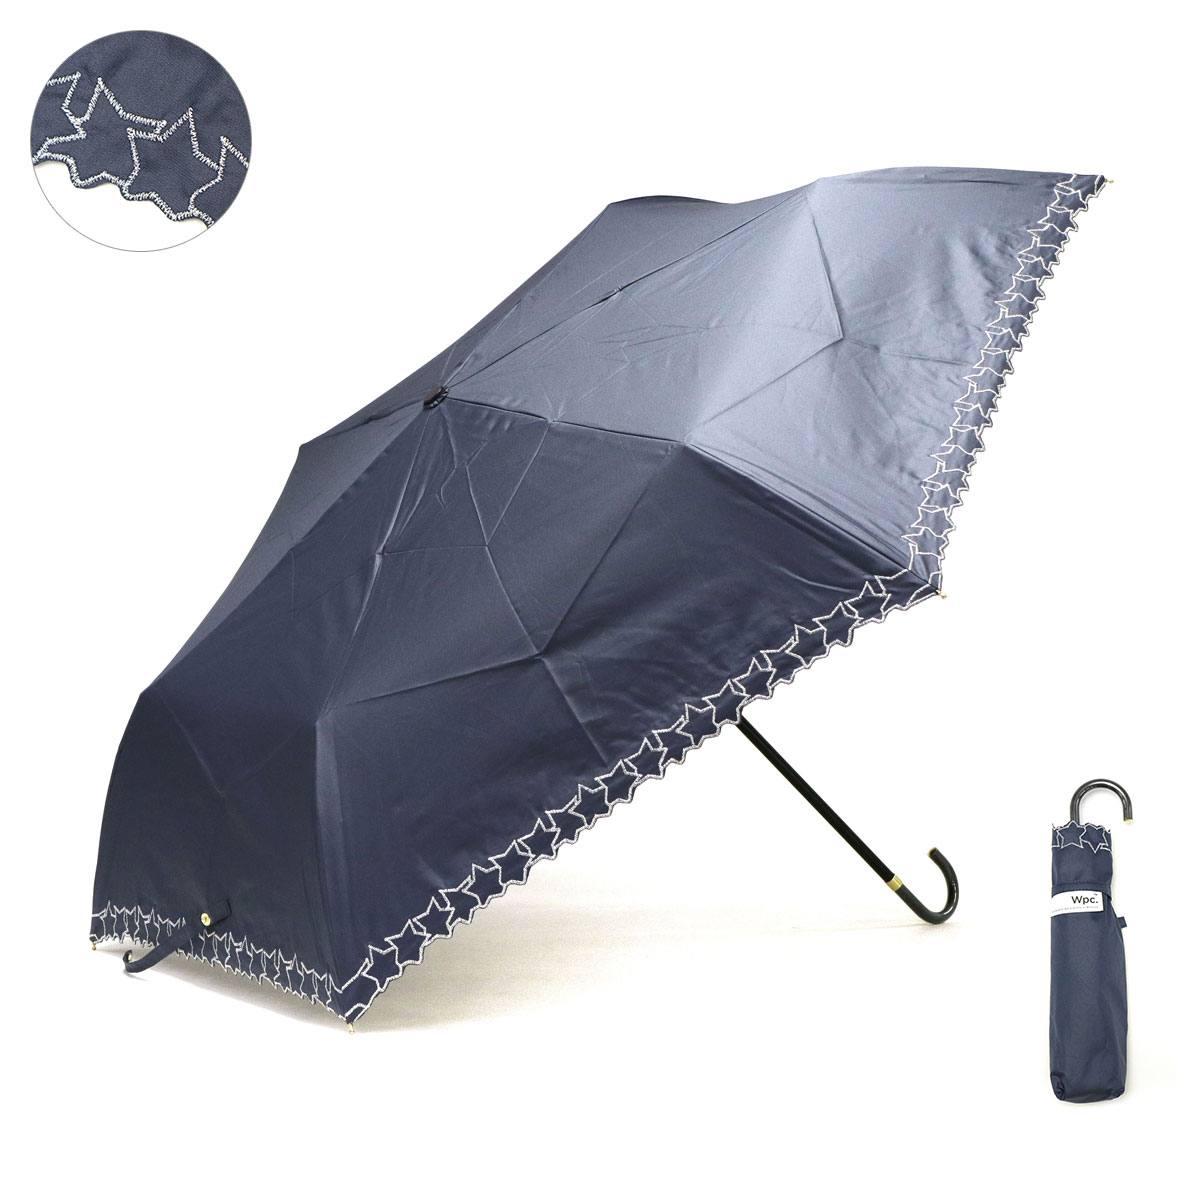 ダブリュピーシー 折りたたみ傘 Wpc. Wpc 日傘 晴雨兼用 軽量 手動 UVカット 完全遮光 ...